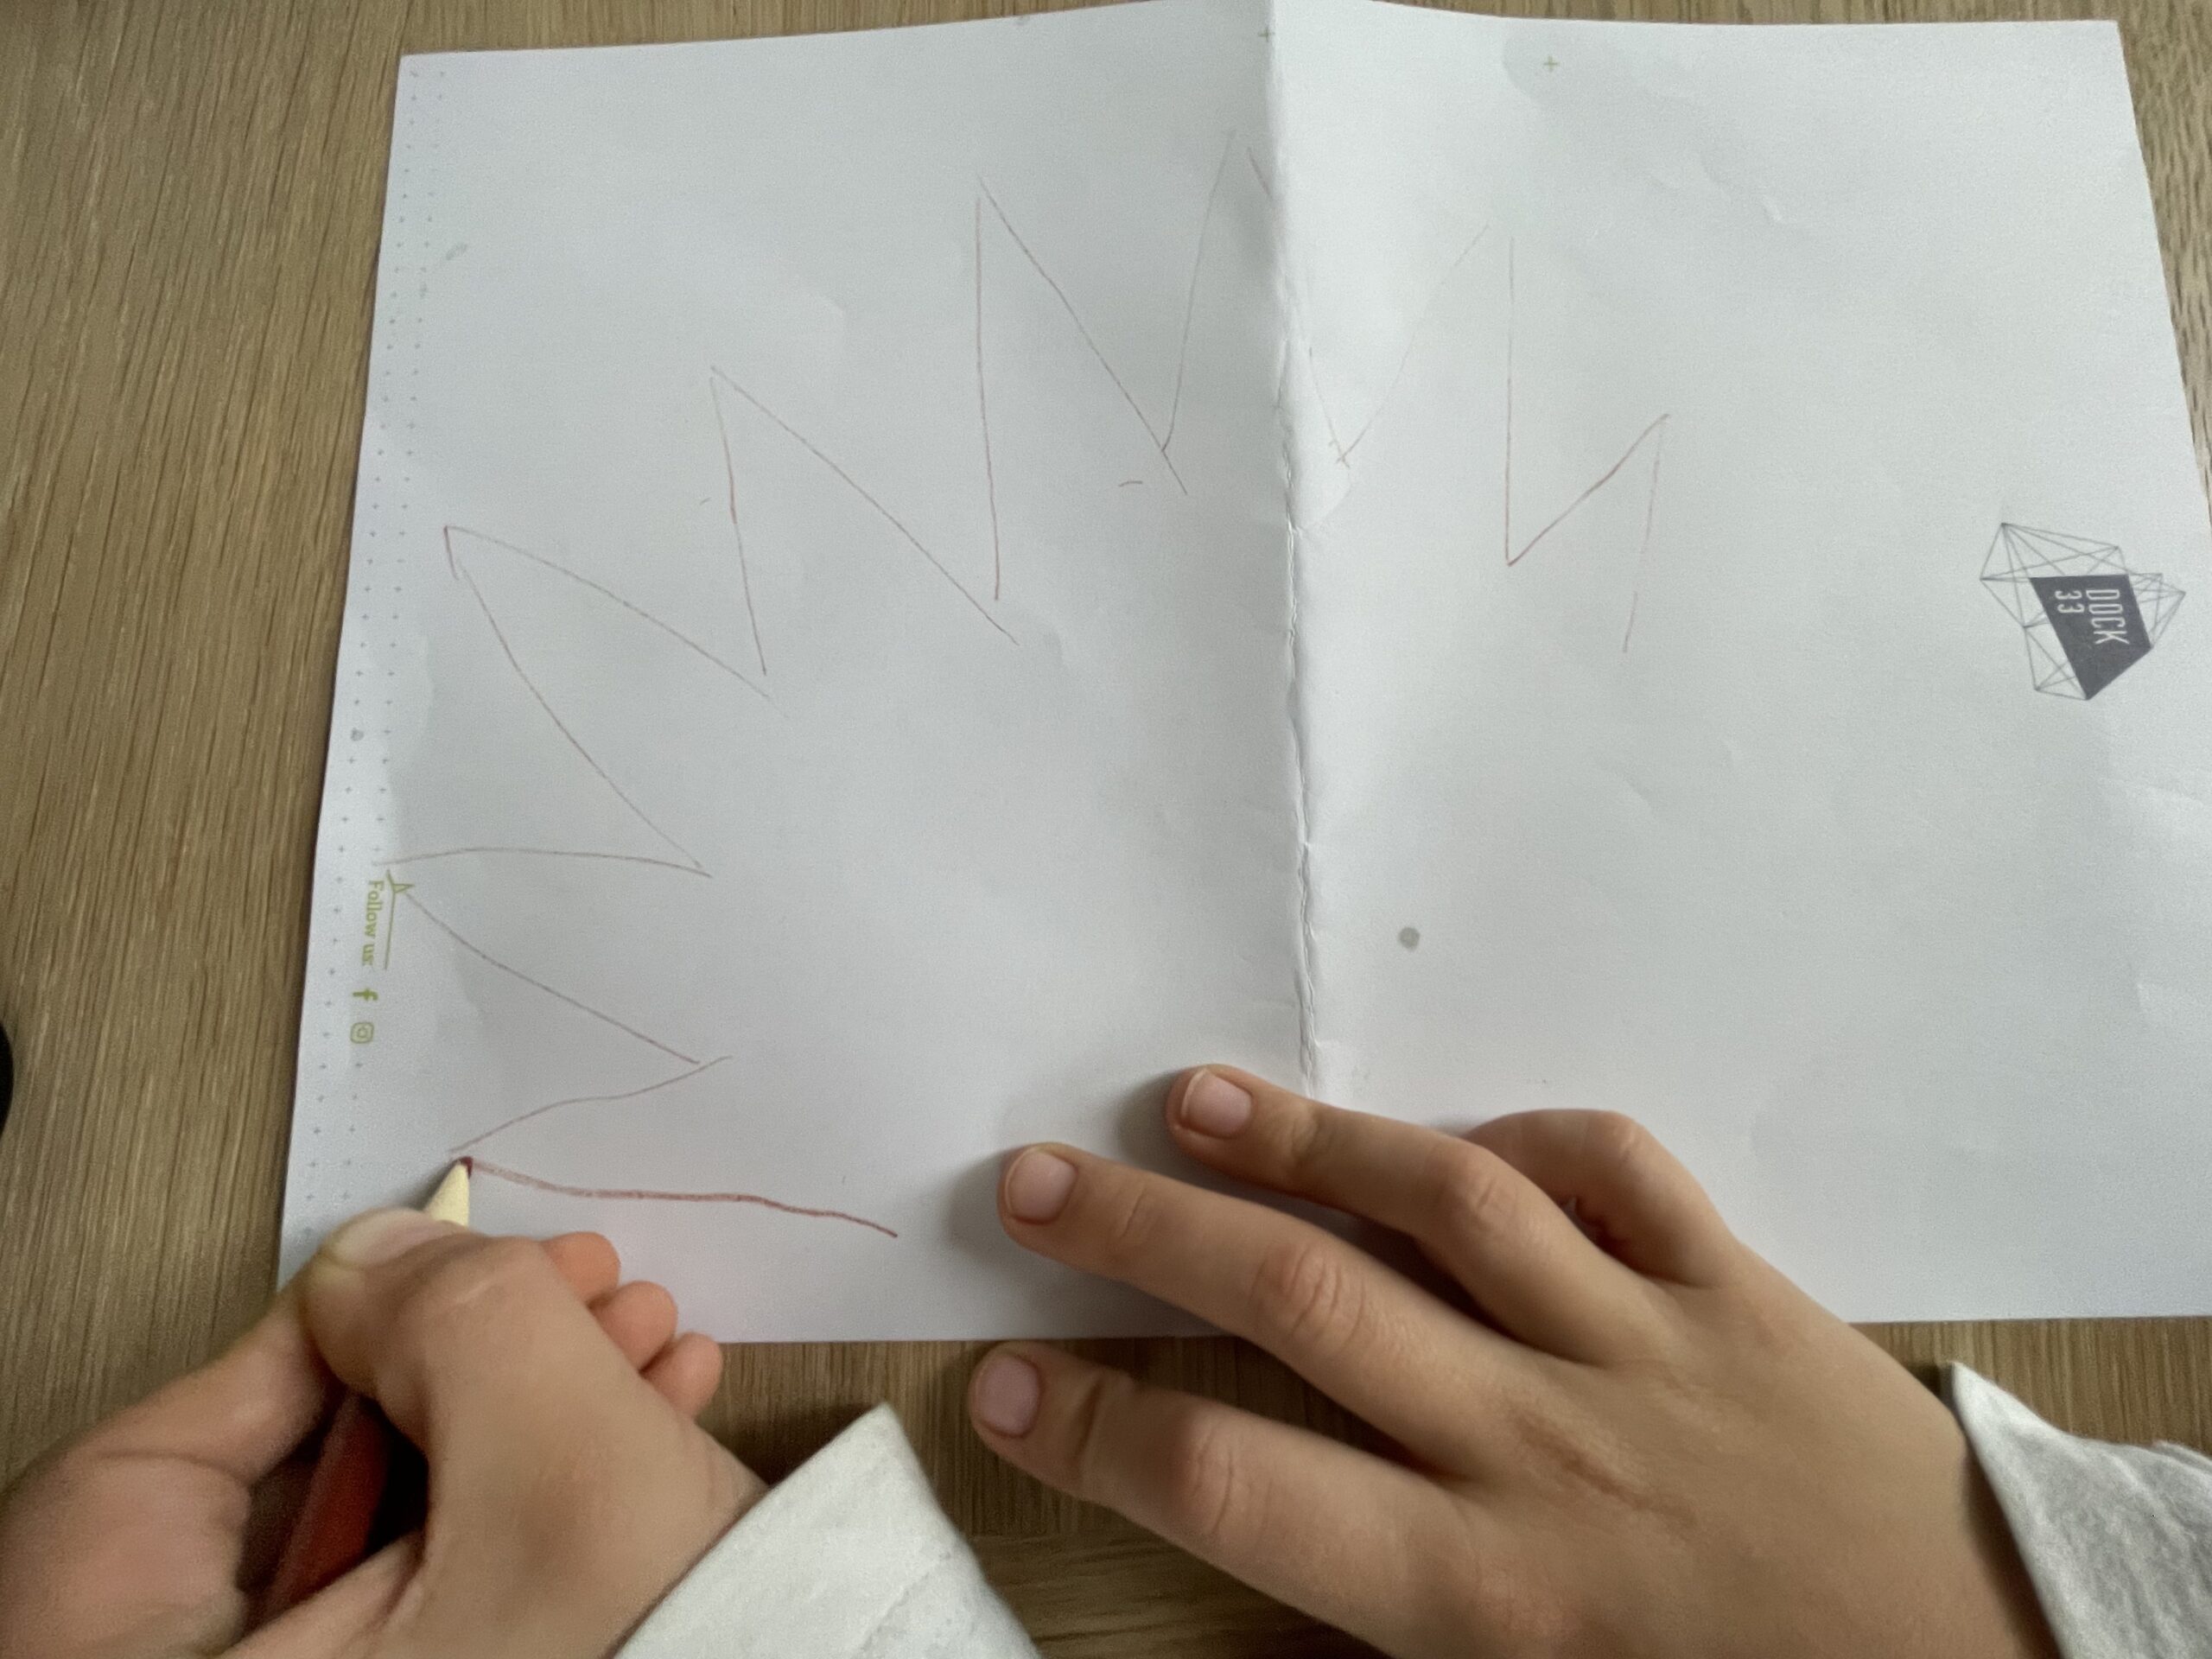 Bild zum Schritt 4 für das Bastel- und DIY-Abenteuer für Kinder: 'Jetzt malt ihr die vorgezeichneten Zacken mit einem Stift kräftig...'